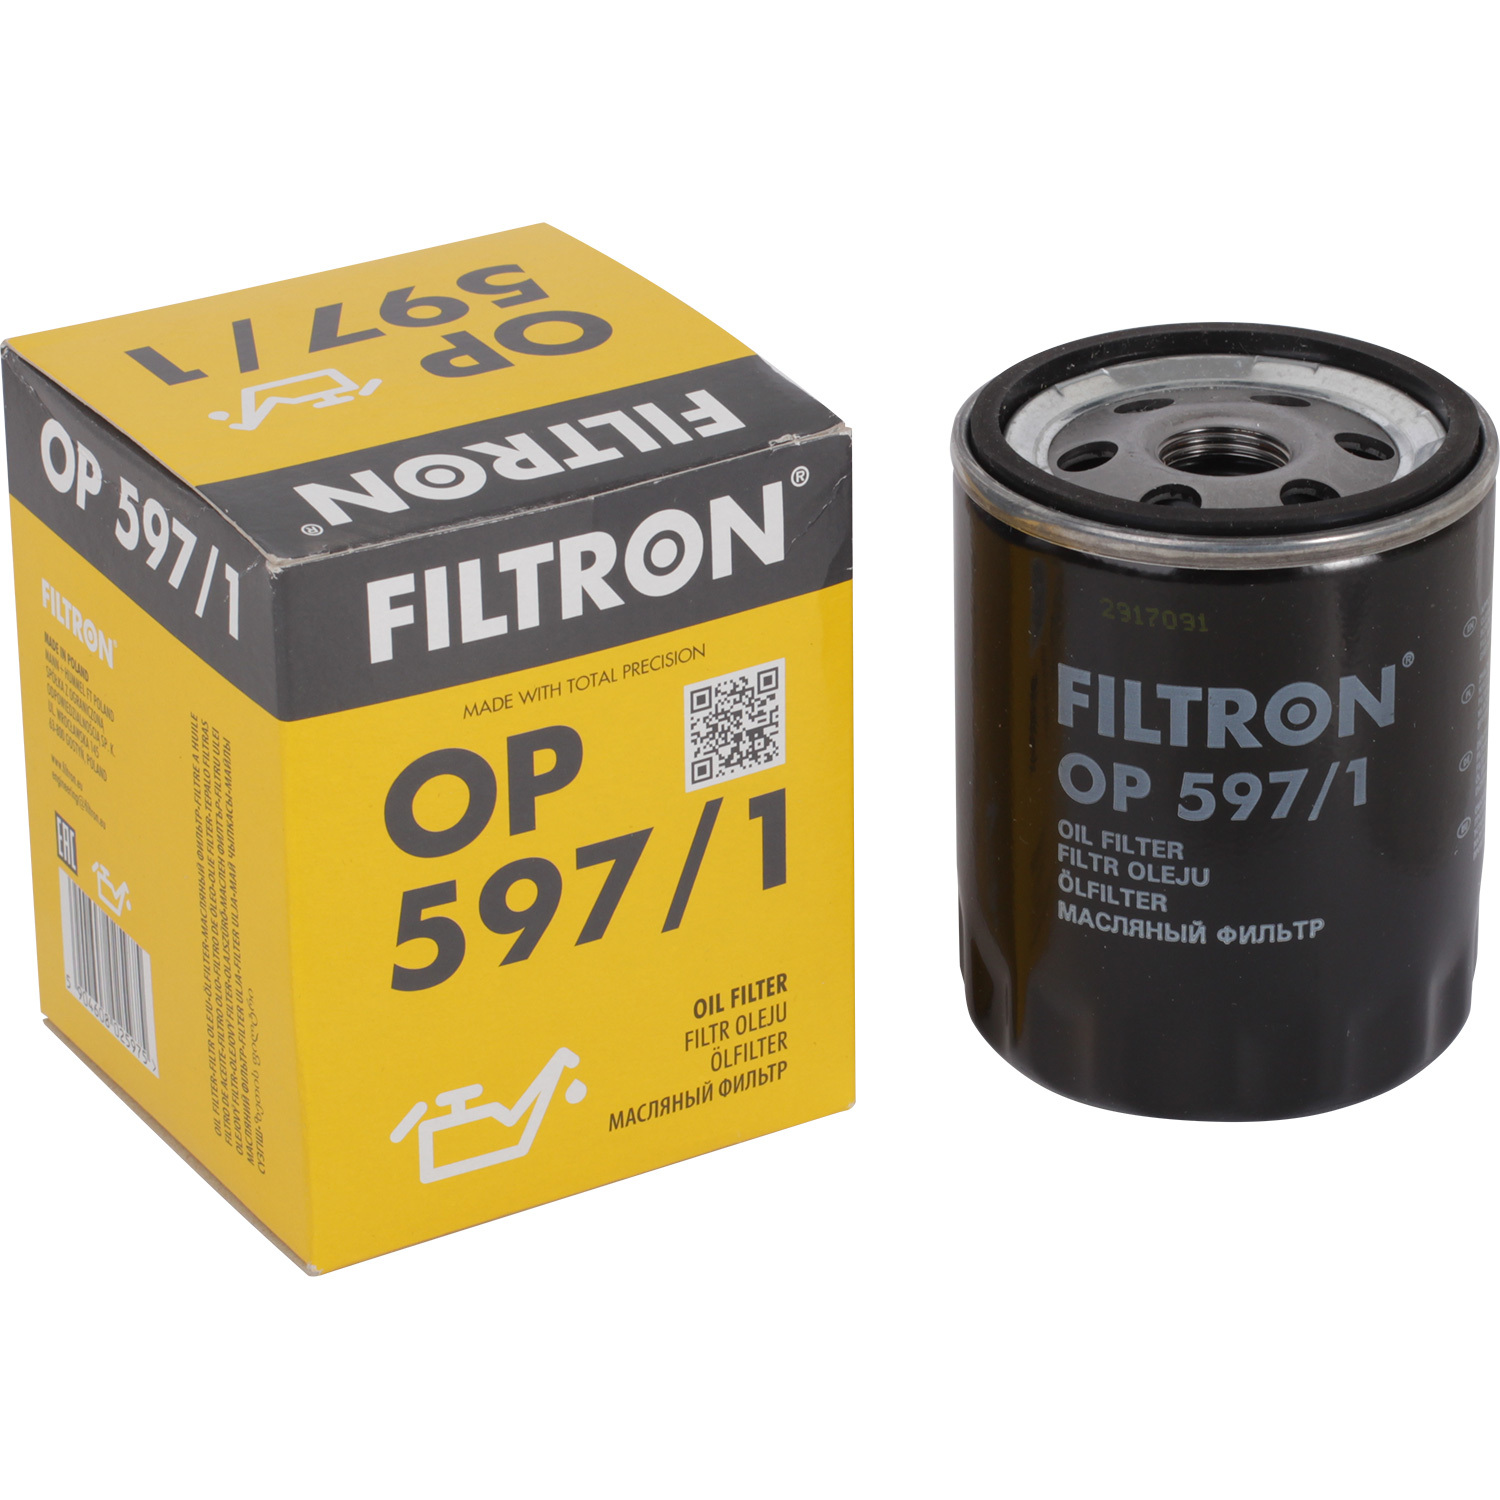 Фильтры Filtron Фильтр масляный Filtron OP5971